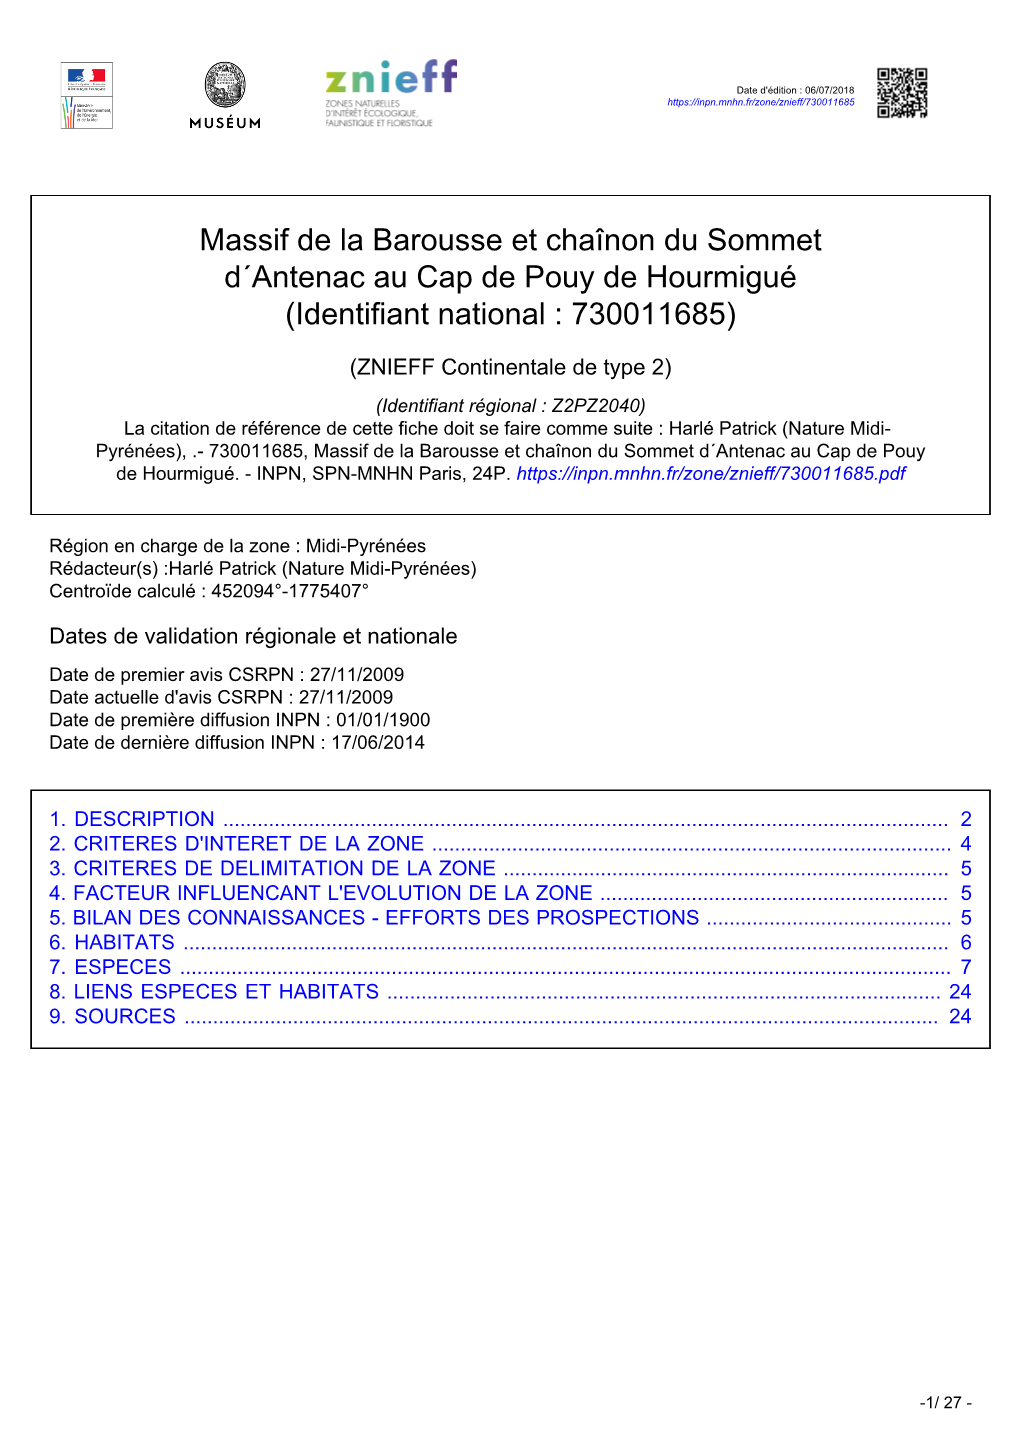 Massif De La Barousse Et Chaînon Du Sommet D´Antenac Au Cap De Pouy De Hourmigué (Identifiant National : 730011685)